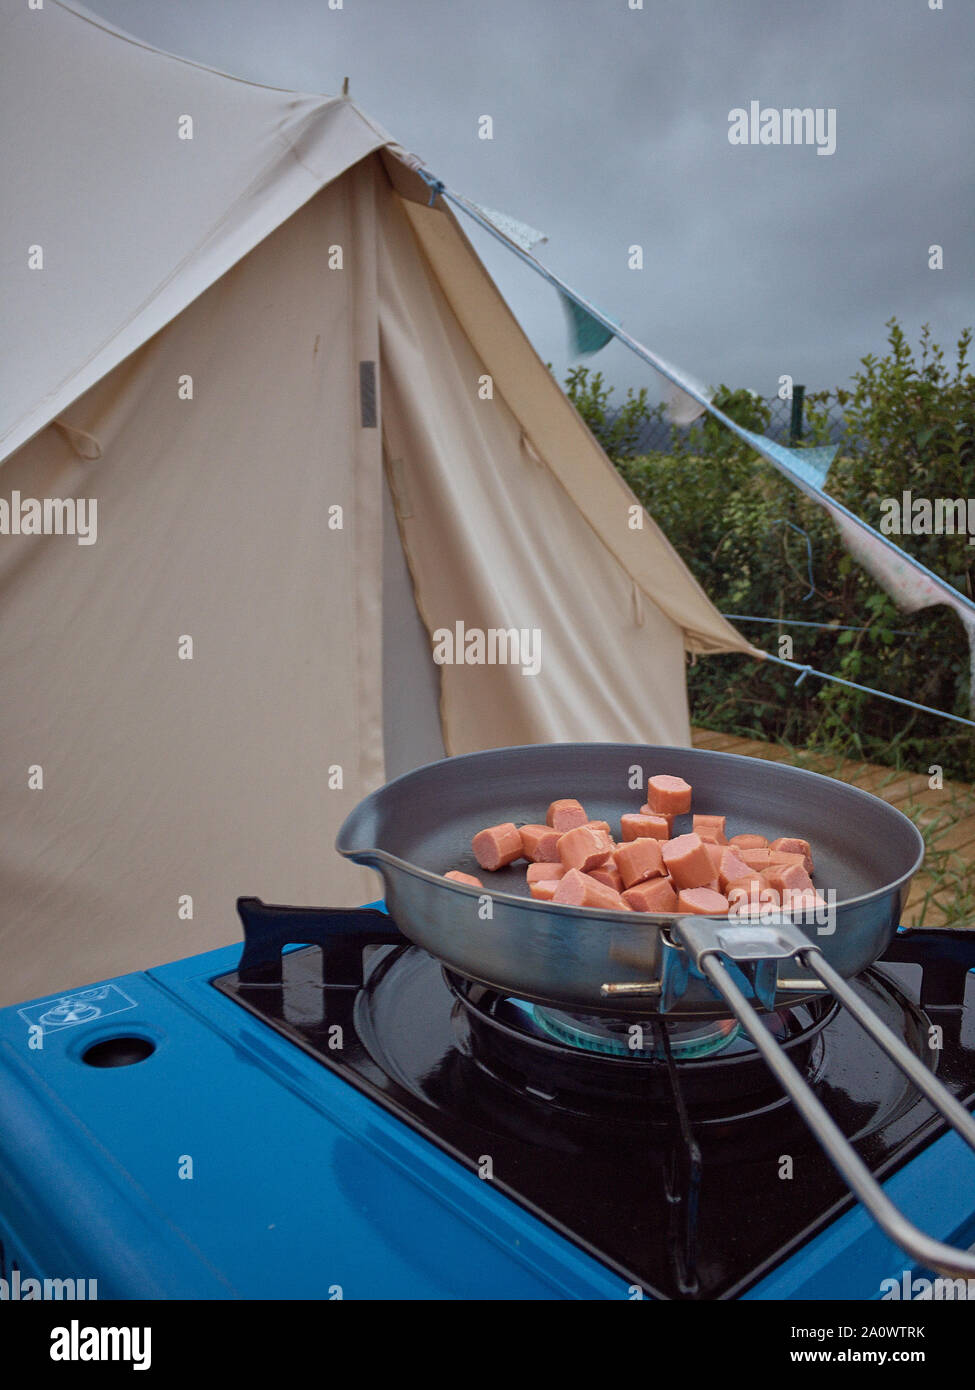 Kochen Würstchen auf einem Campingkocher in der Nähe des Camping Zelt  Stockfotografie - Alamy